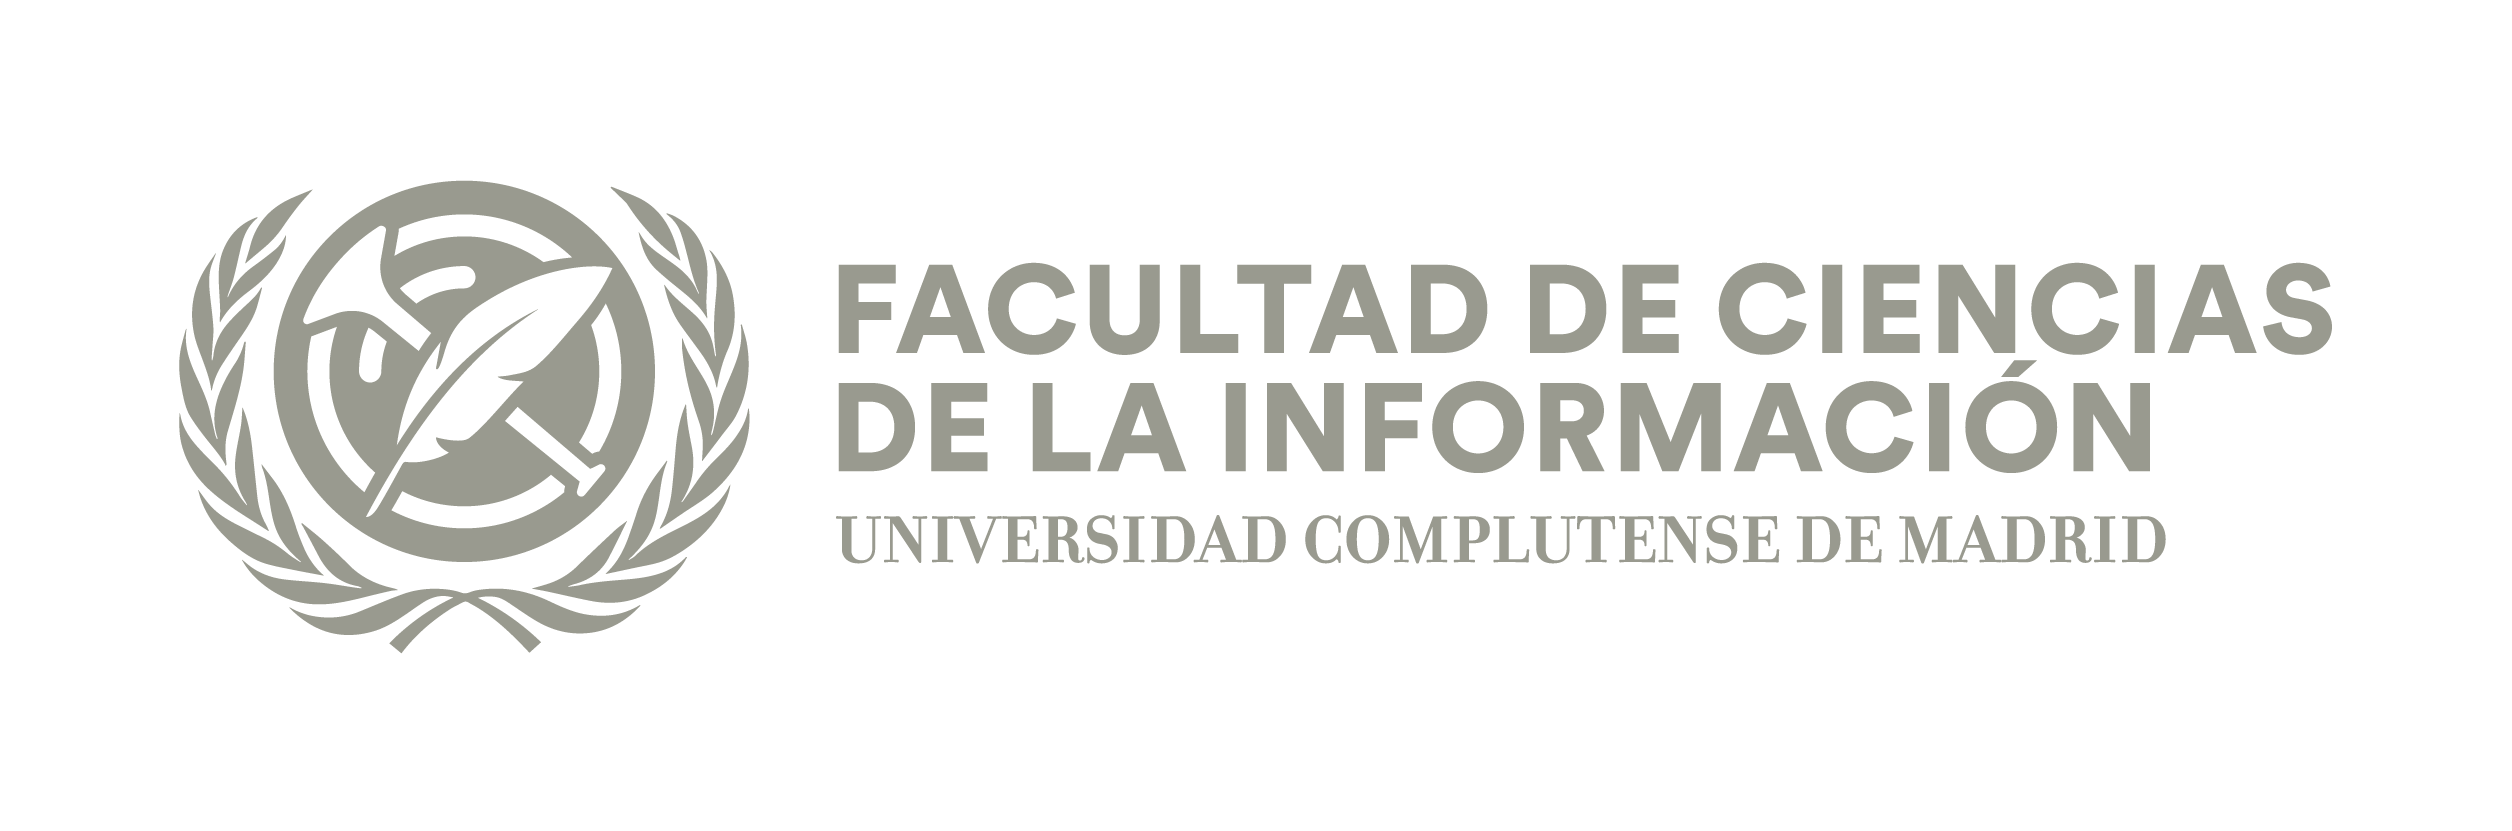 Logo Horizontal Facultad Ciencias de la Información Logotipo